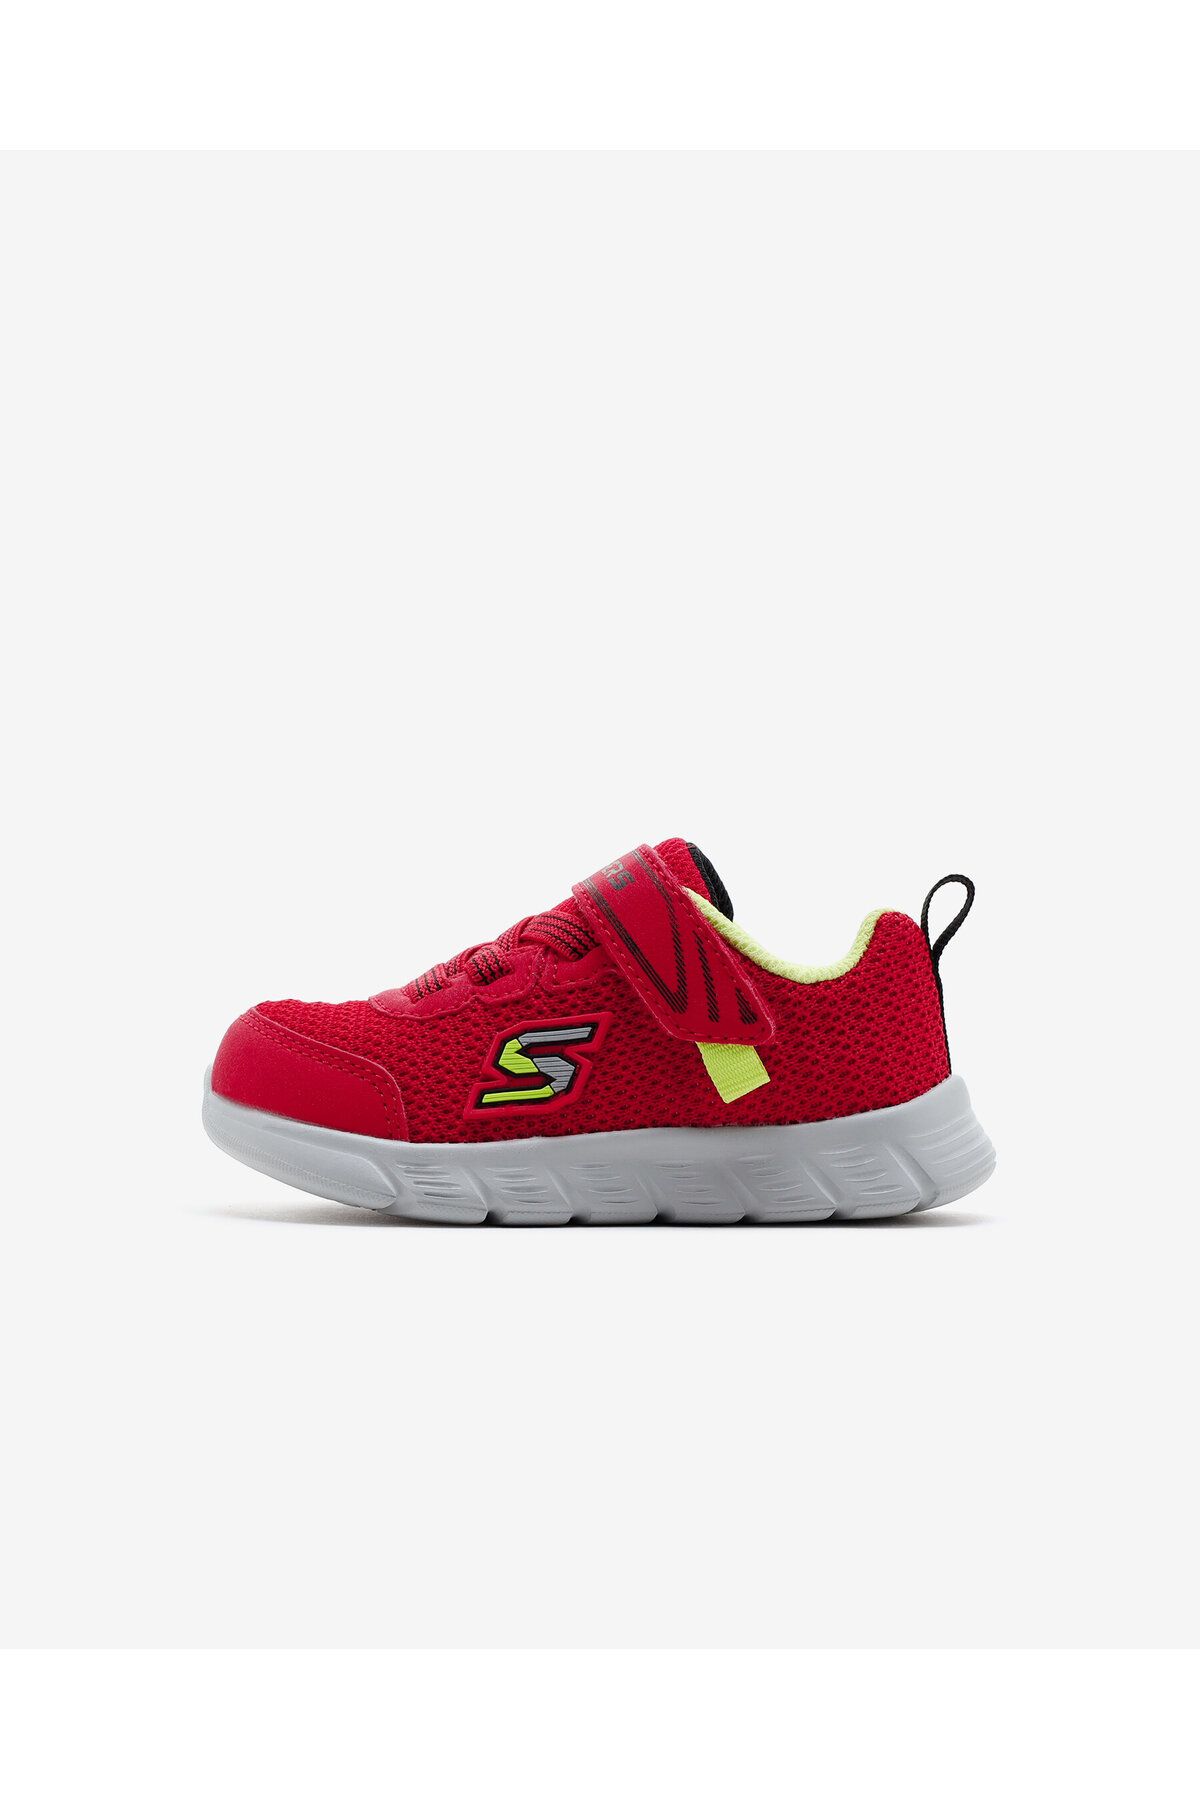 Skechers Comfy Flex - Mini Trainers Küçük Erkek Çocuk Kırmızı Spor Ayakkabı 407305N Rdbk